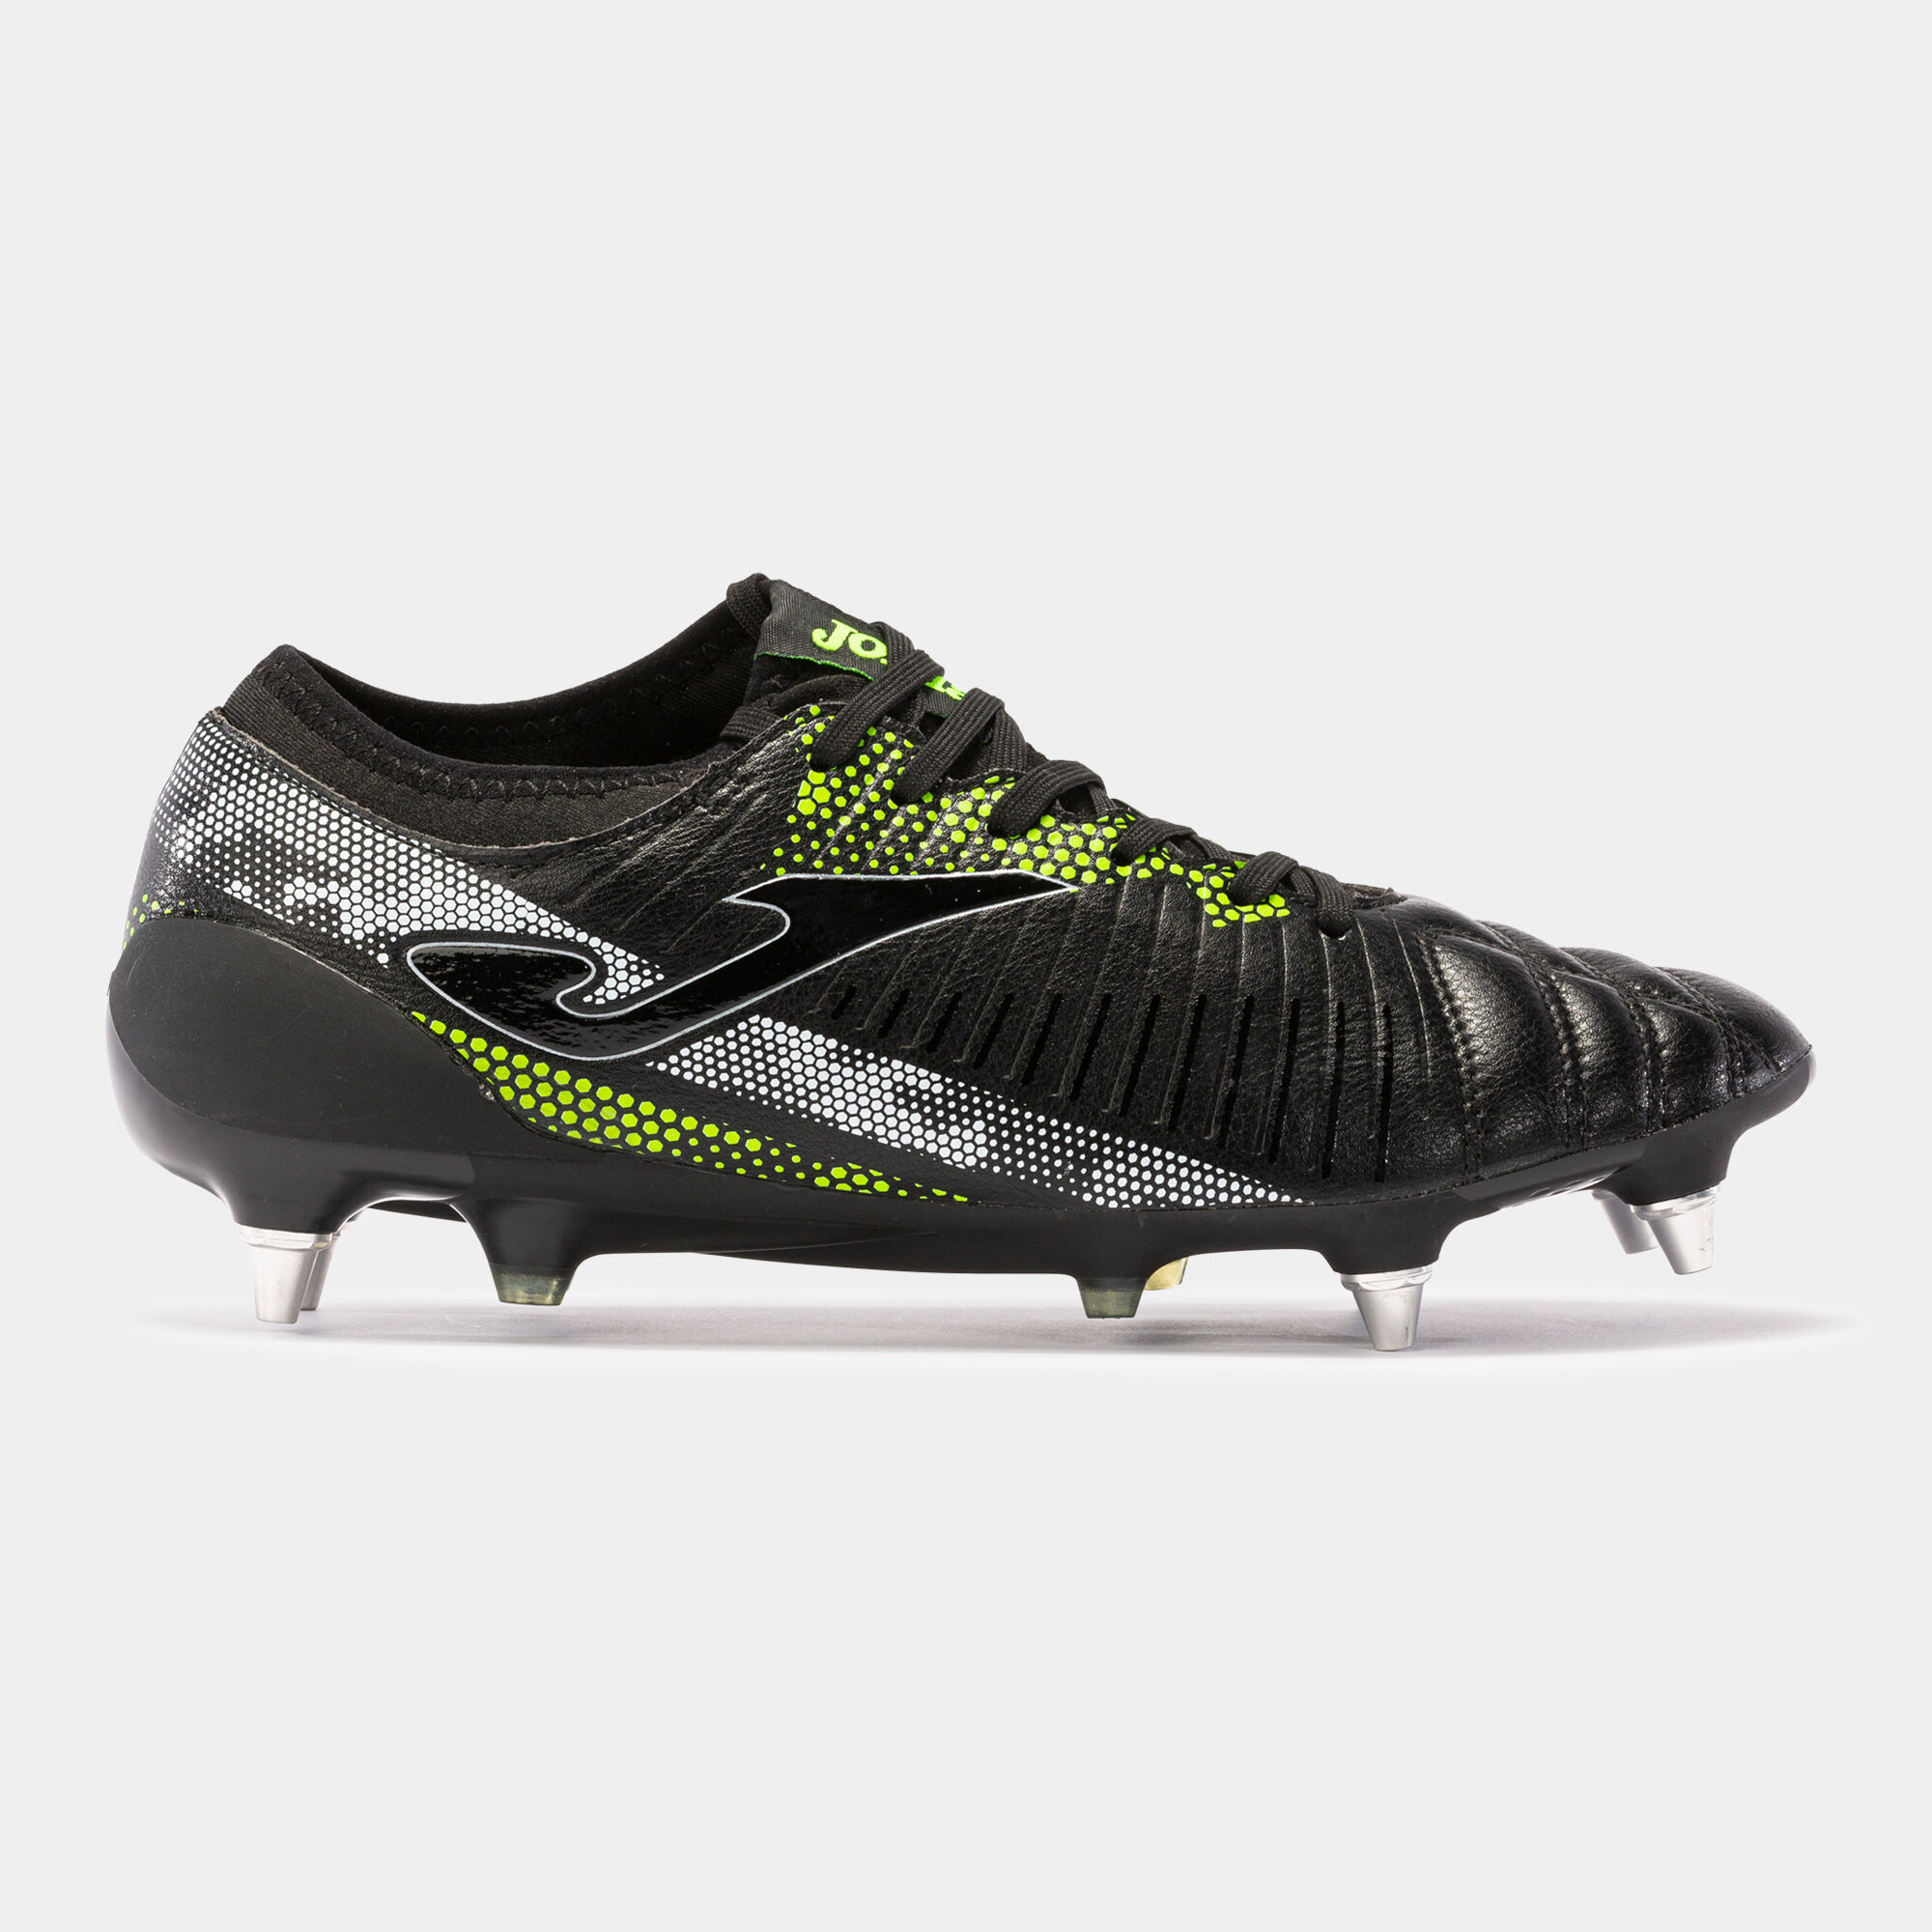 Buty piłkarskie Propulsion Cup 21 miękkie podłoże SG czarny fluorescencyjny zólty